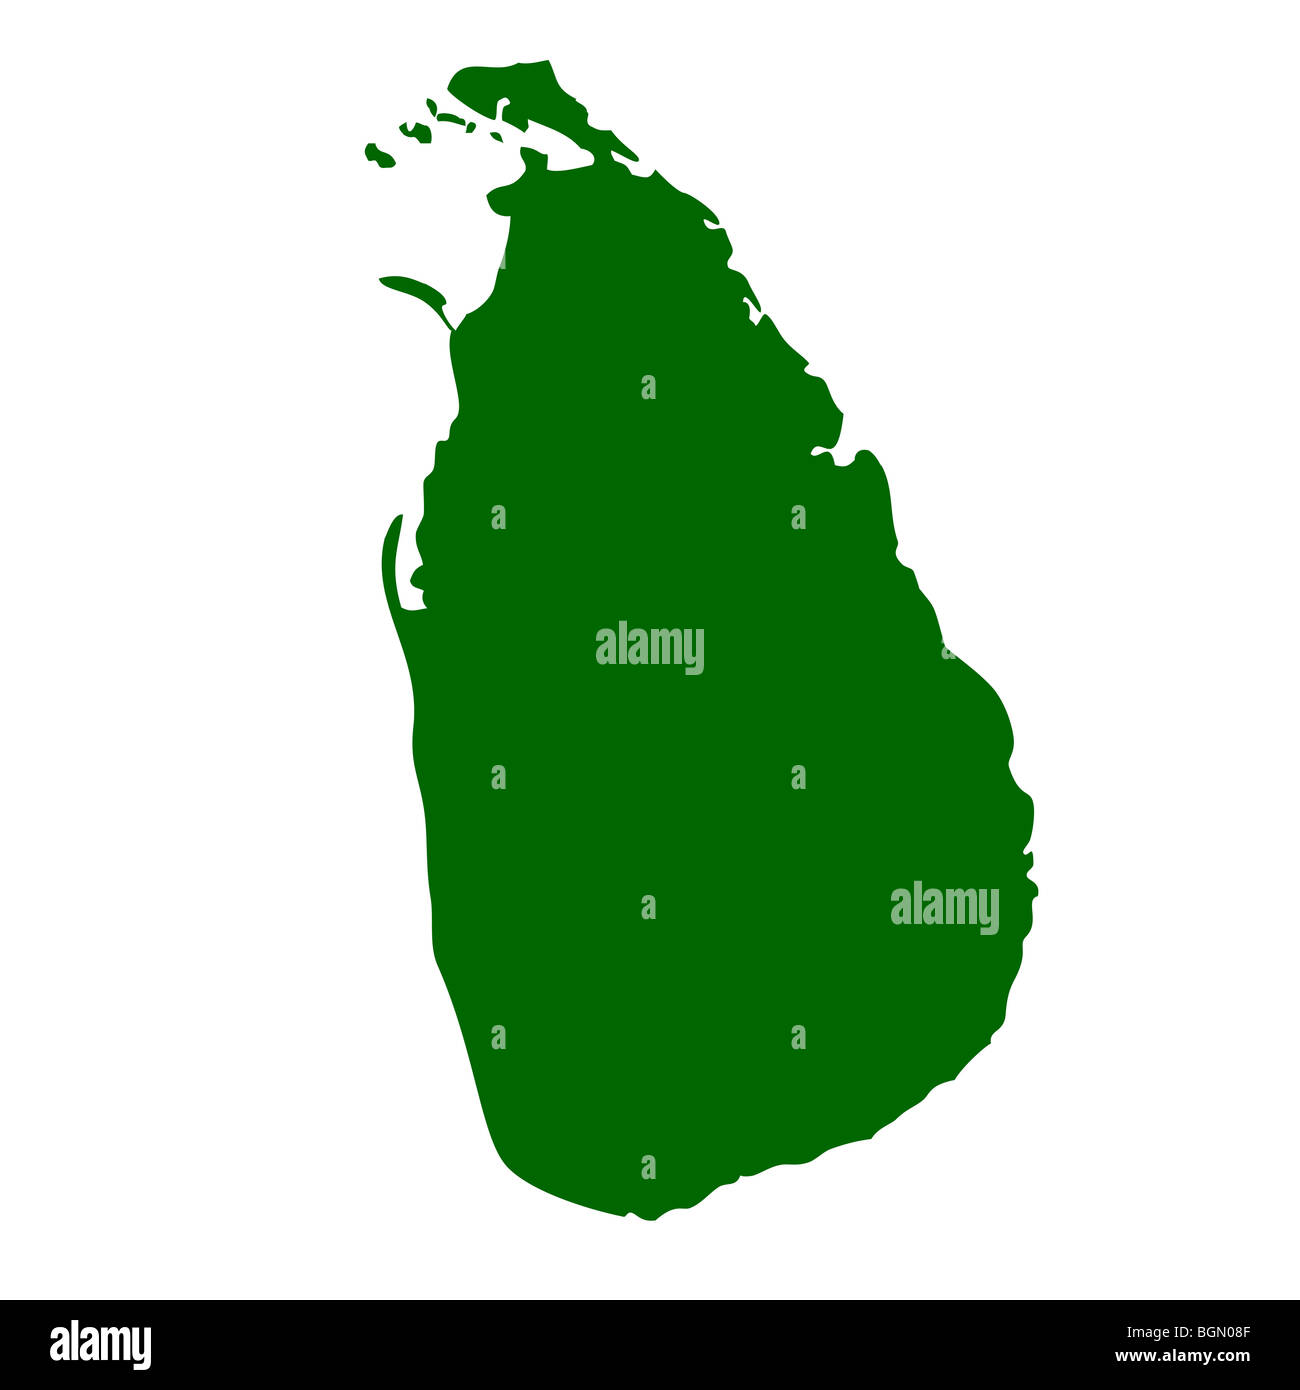 Sri Lanka map isolated on white background. Stock Photo